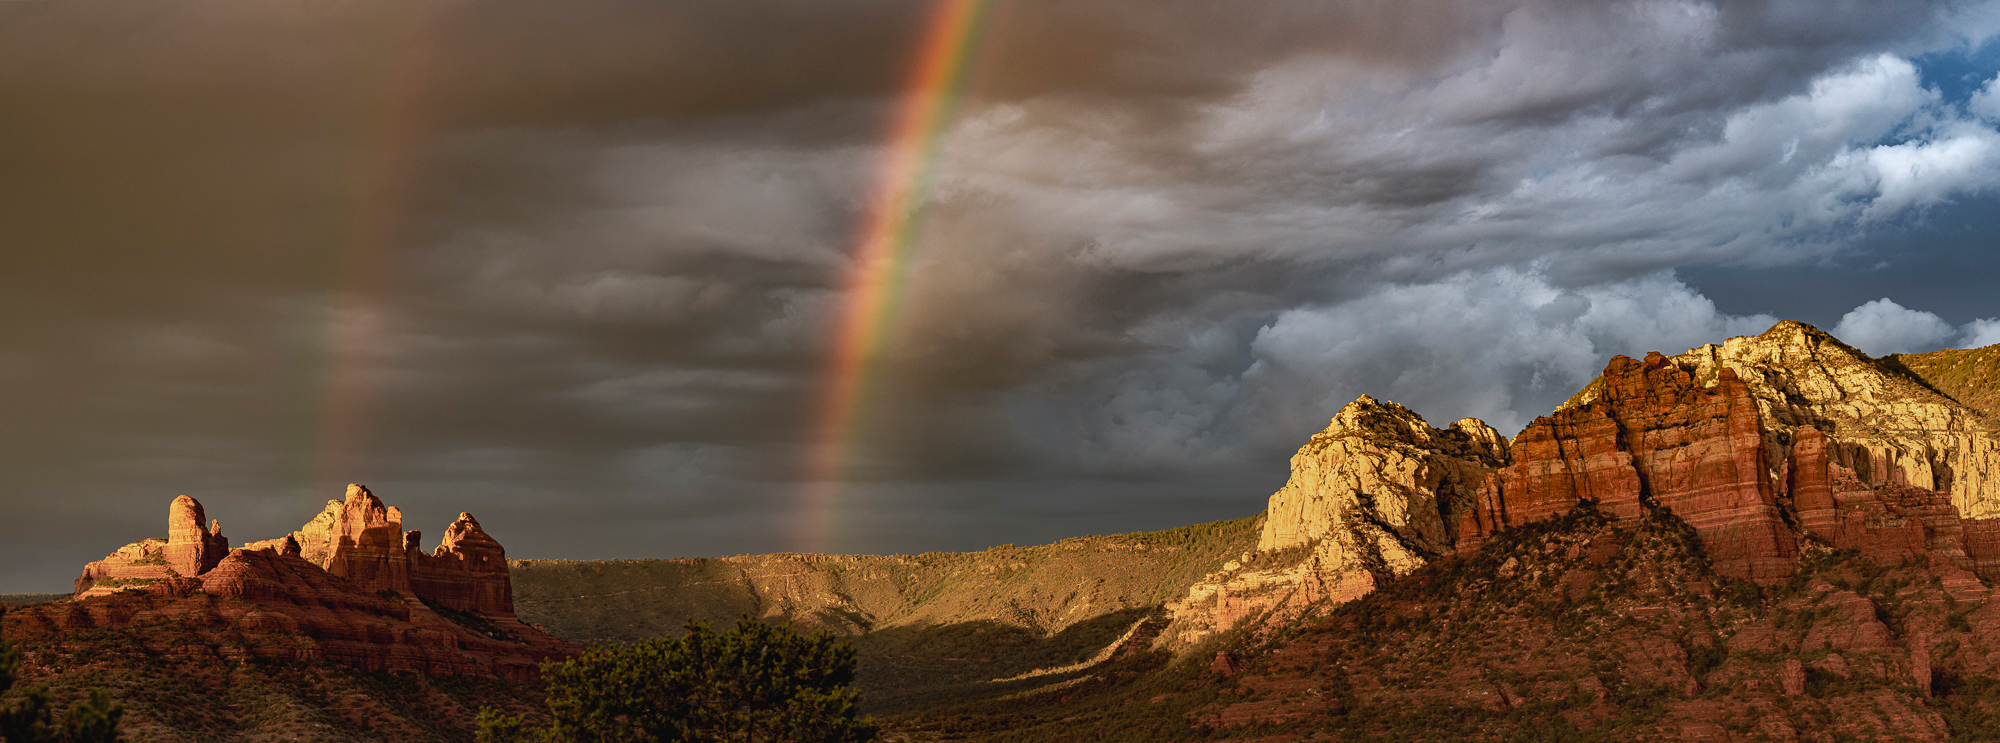 Clearing Thunderstorm & Rainbow, Sedona, AZ